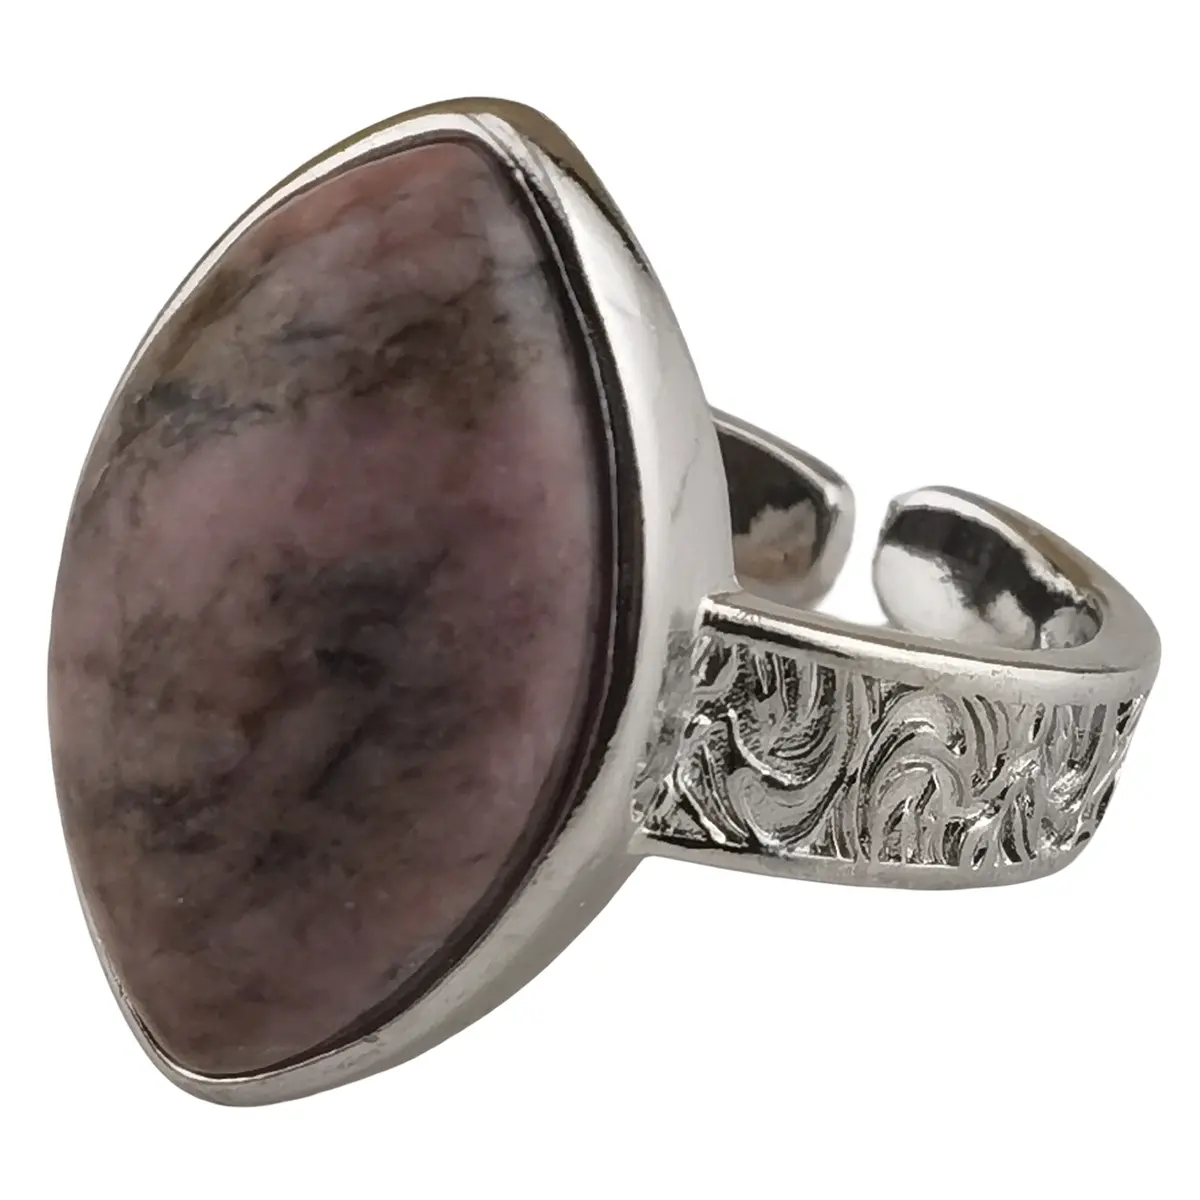 Grosir cincin jari kecil logam Pria Wanita Perhiasan warna-warni alami bentuk mata kuda batu permata Rhodonite merah